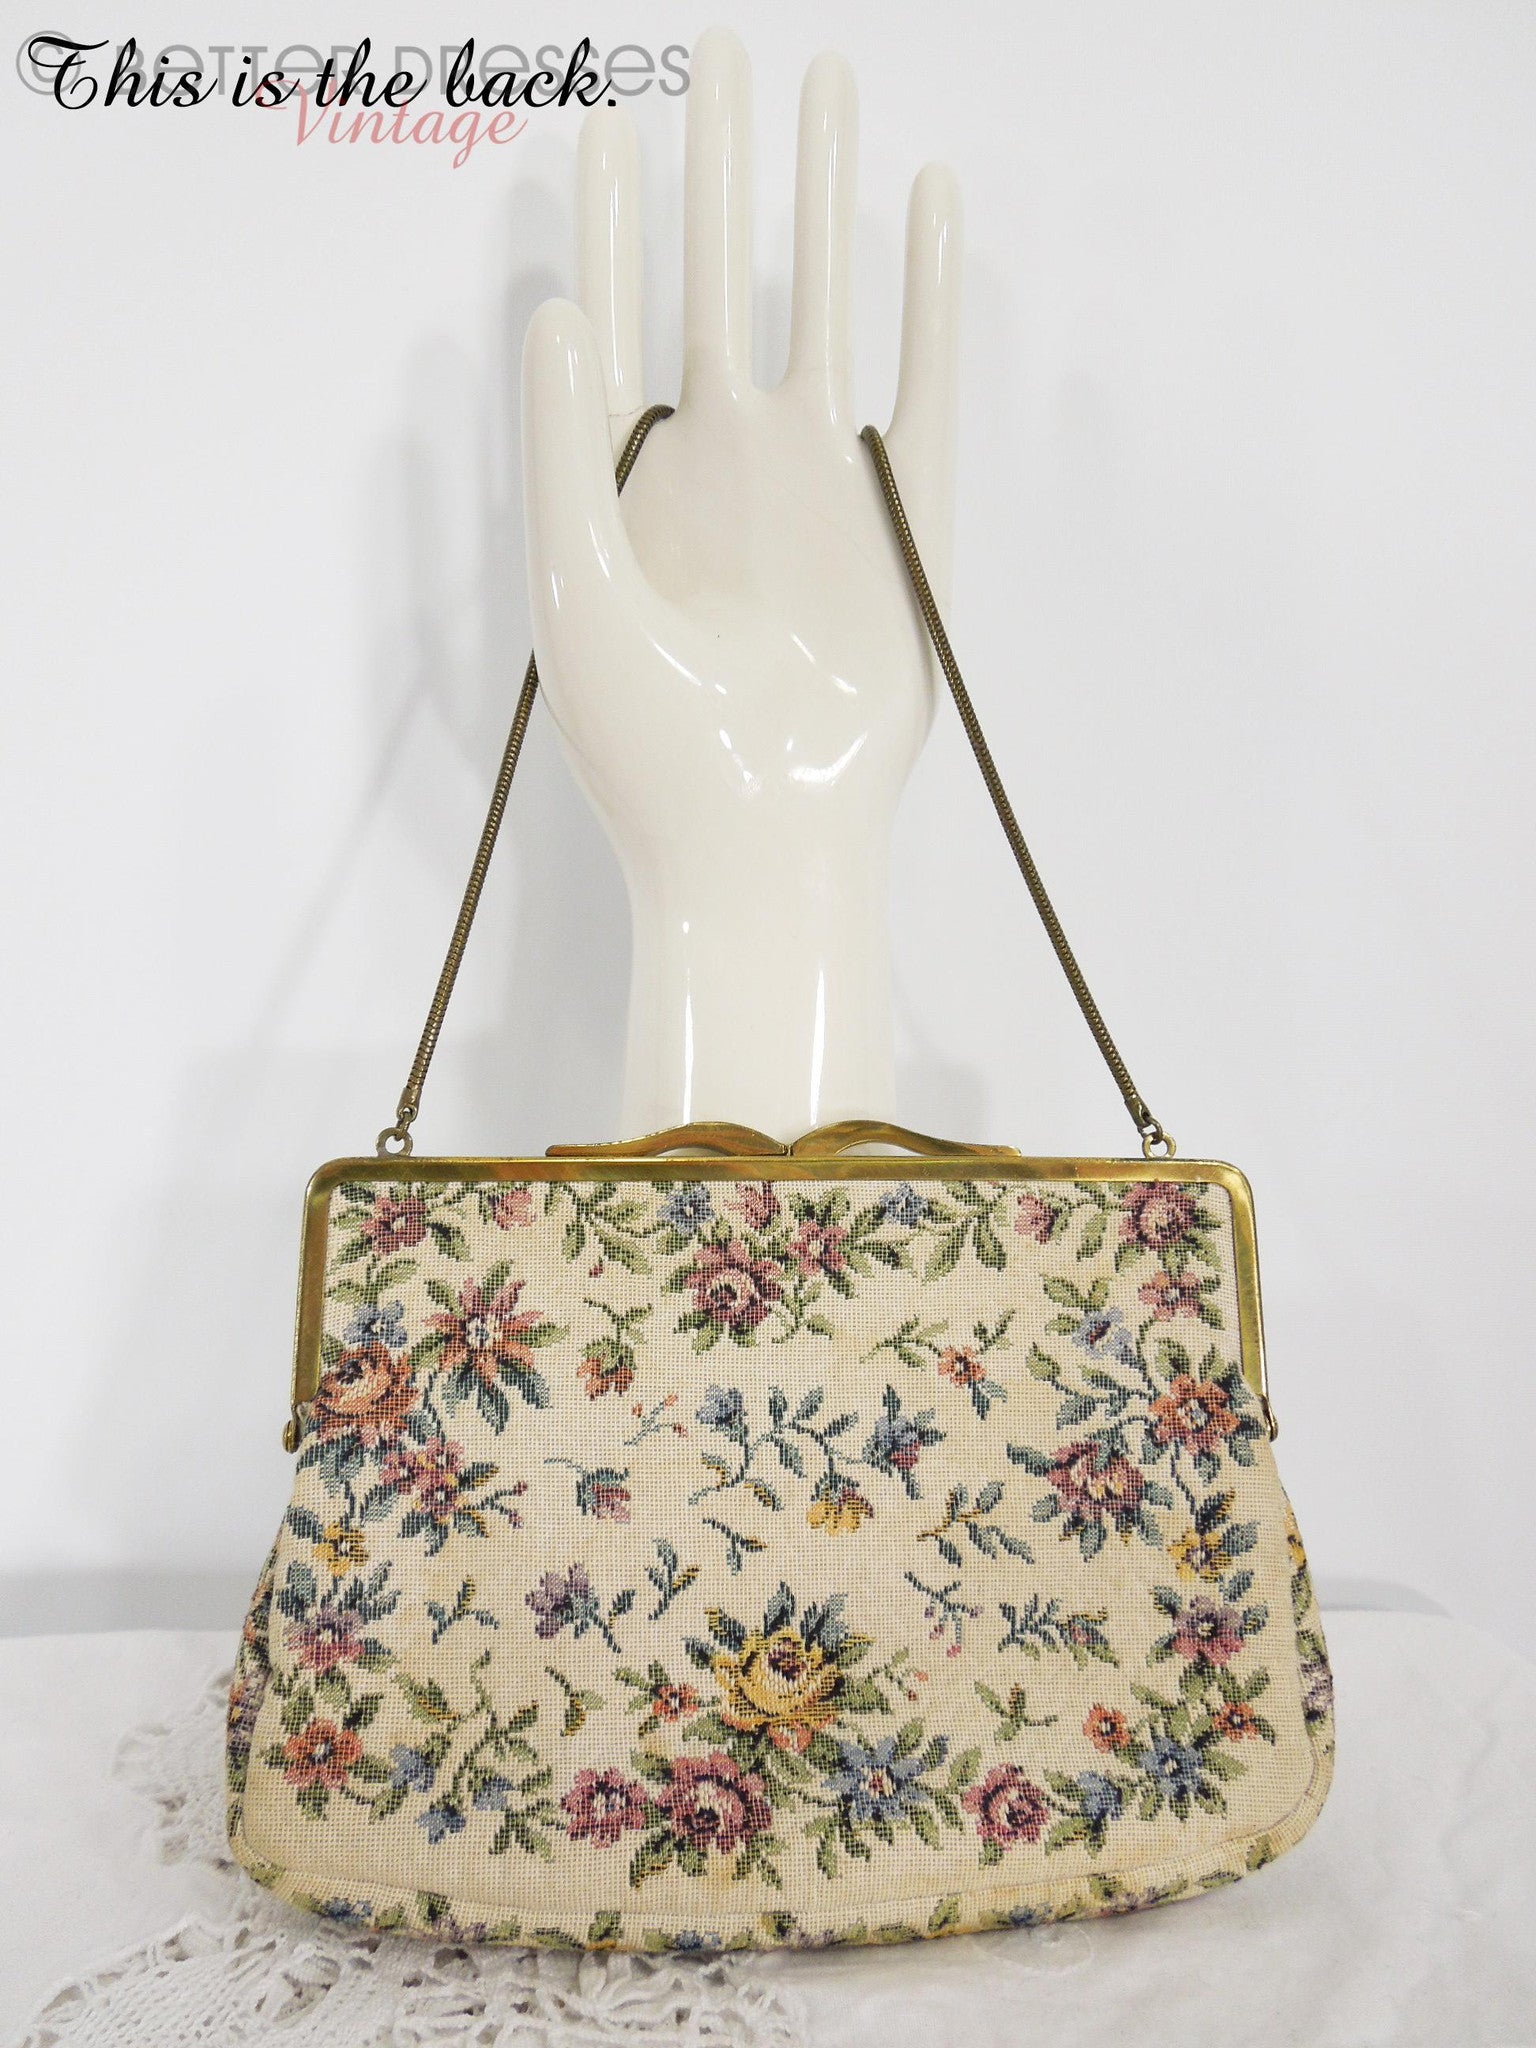 Rockabilly Purse 1950s Vintage Bags, Handbags & Cases for sale | eBay